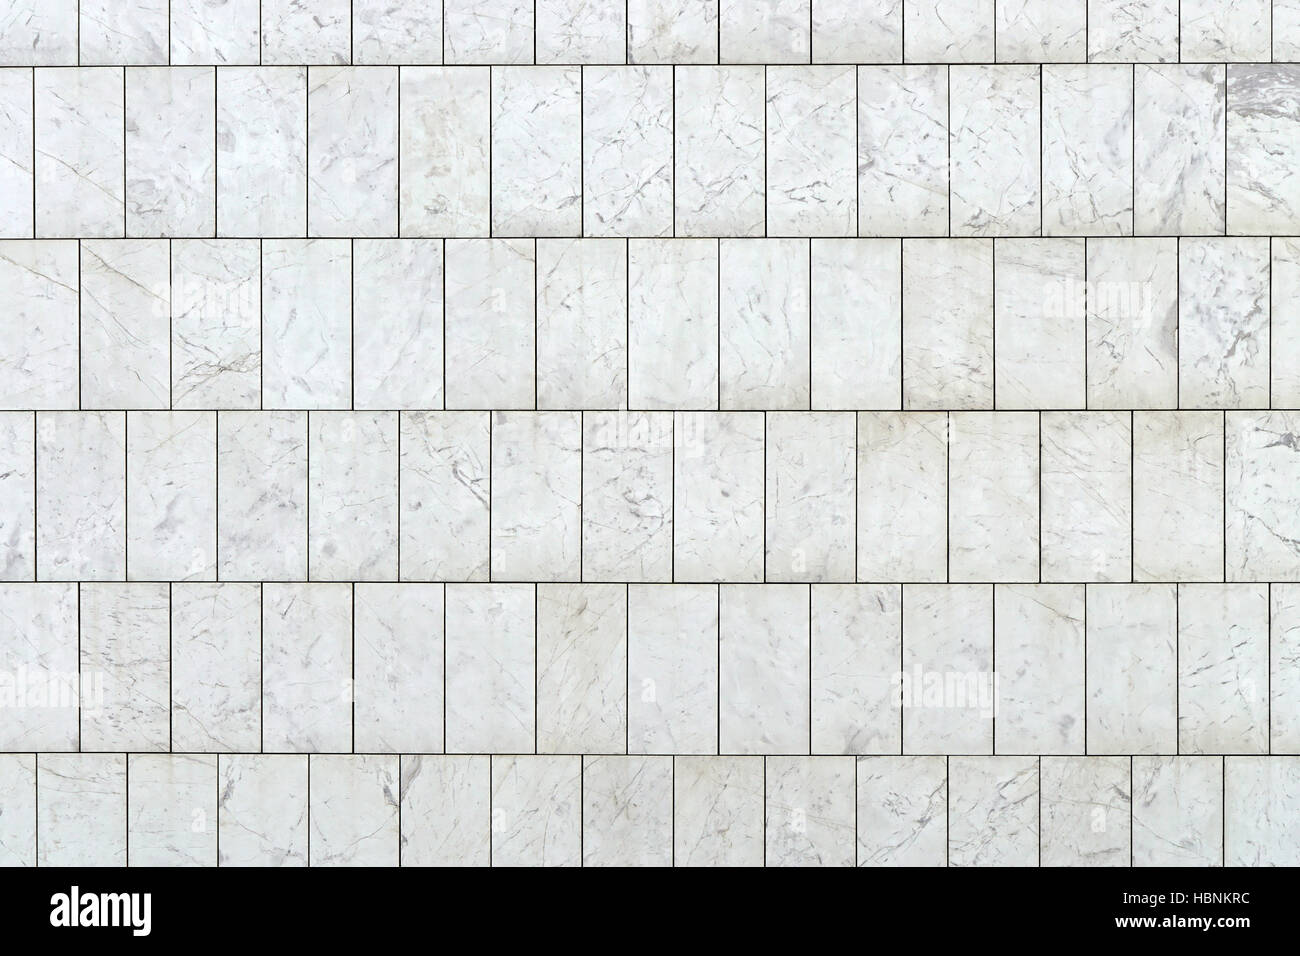 White marble tiles Stock Photo